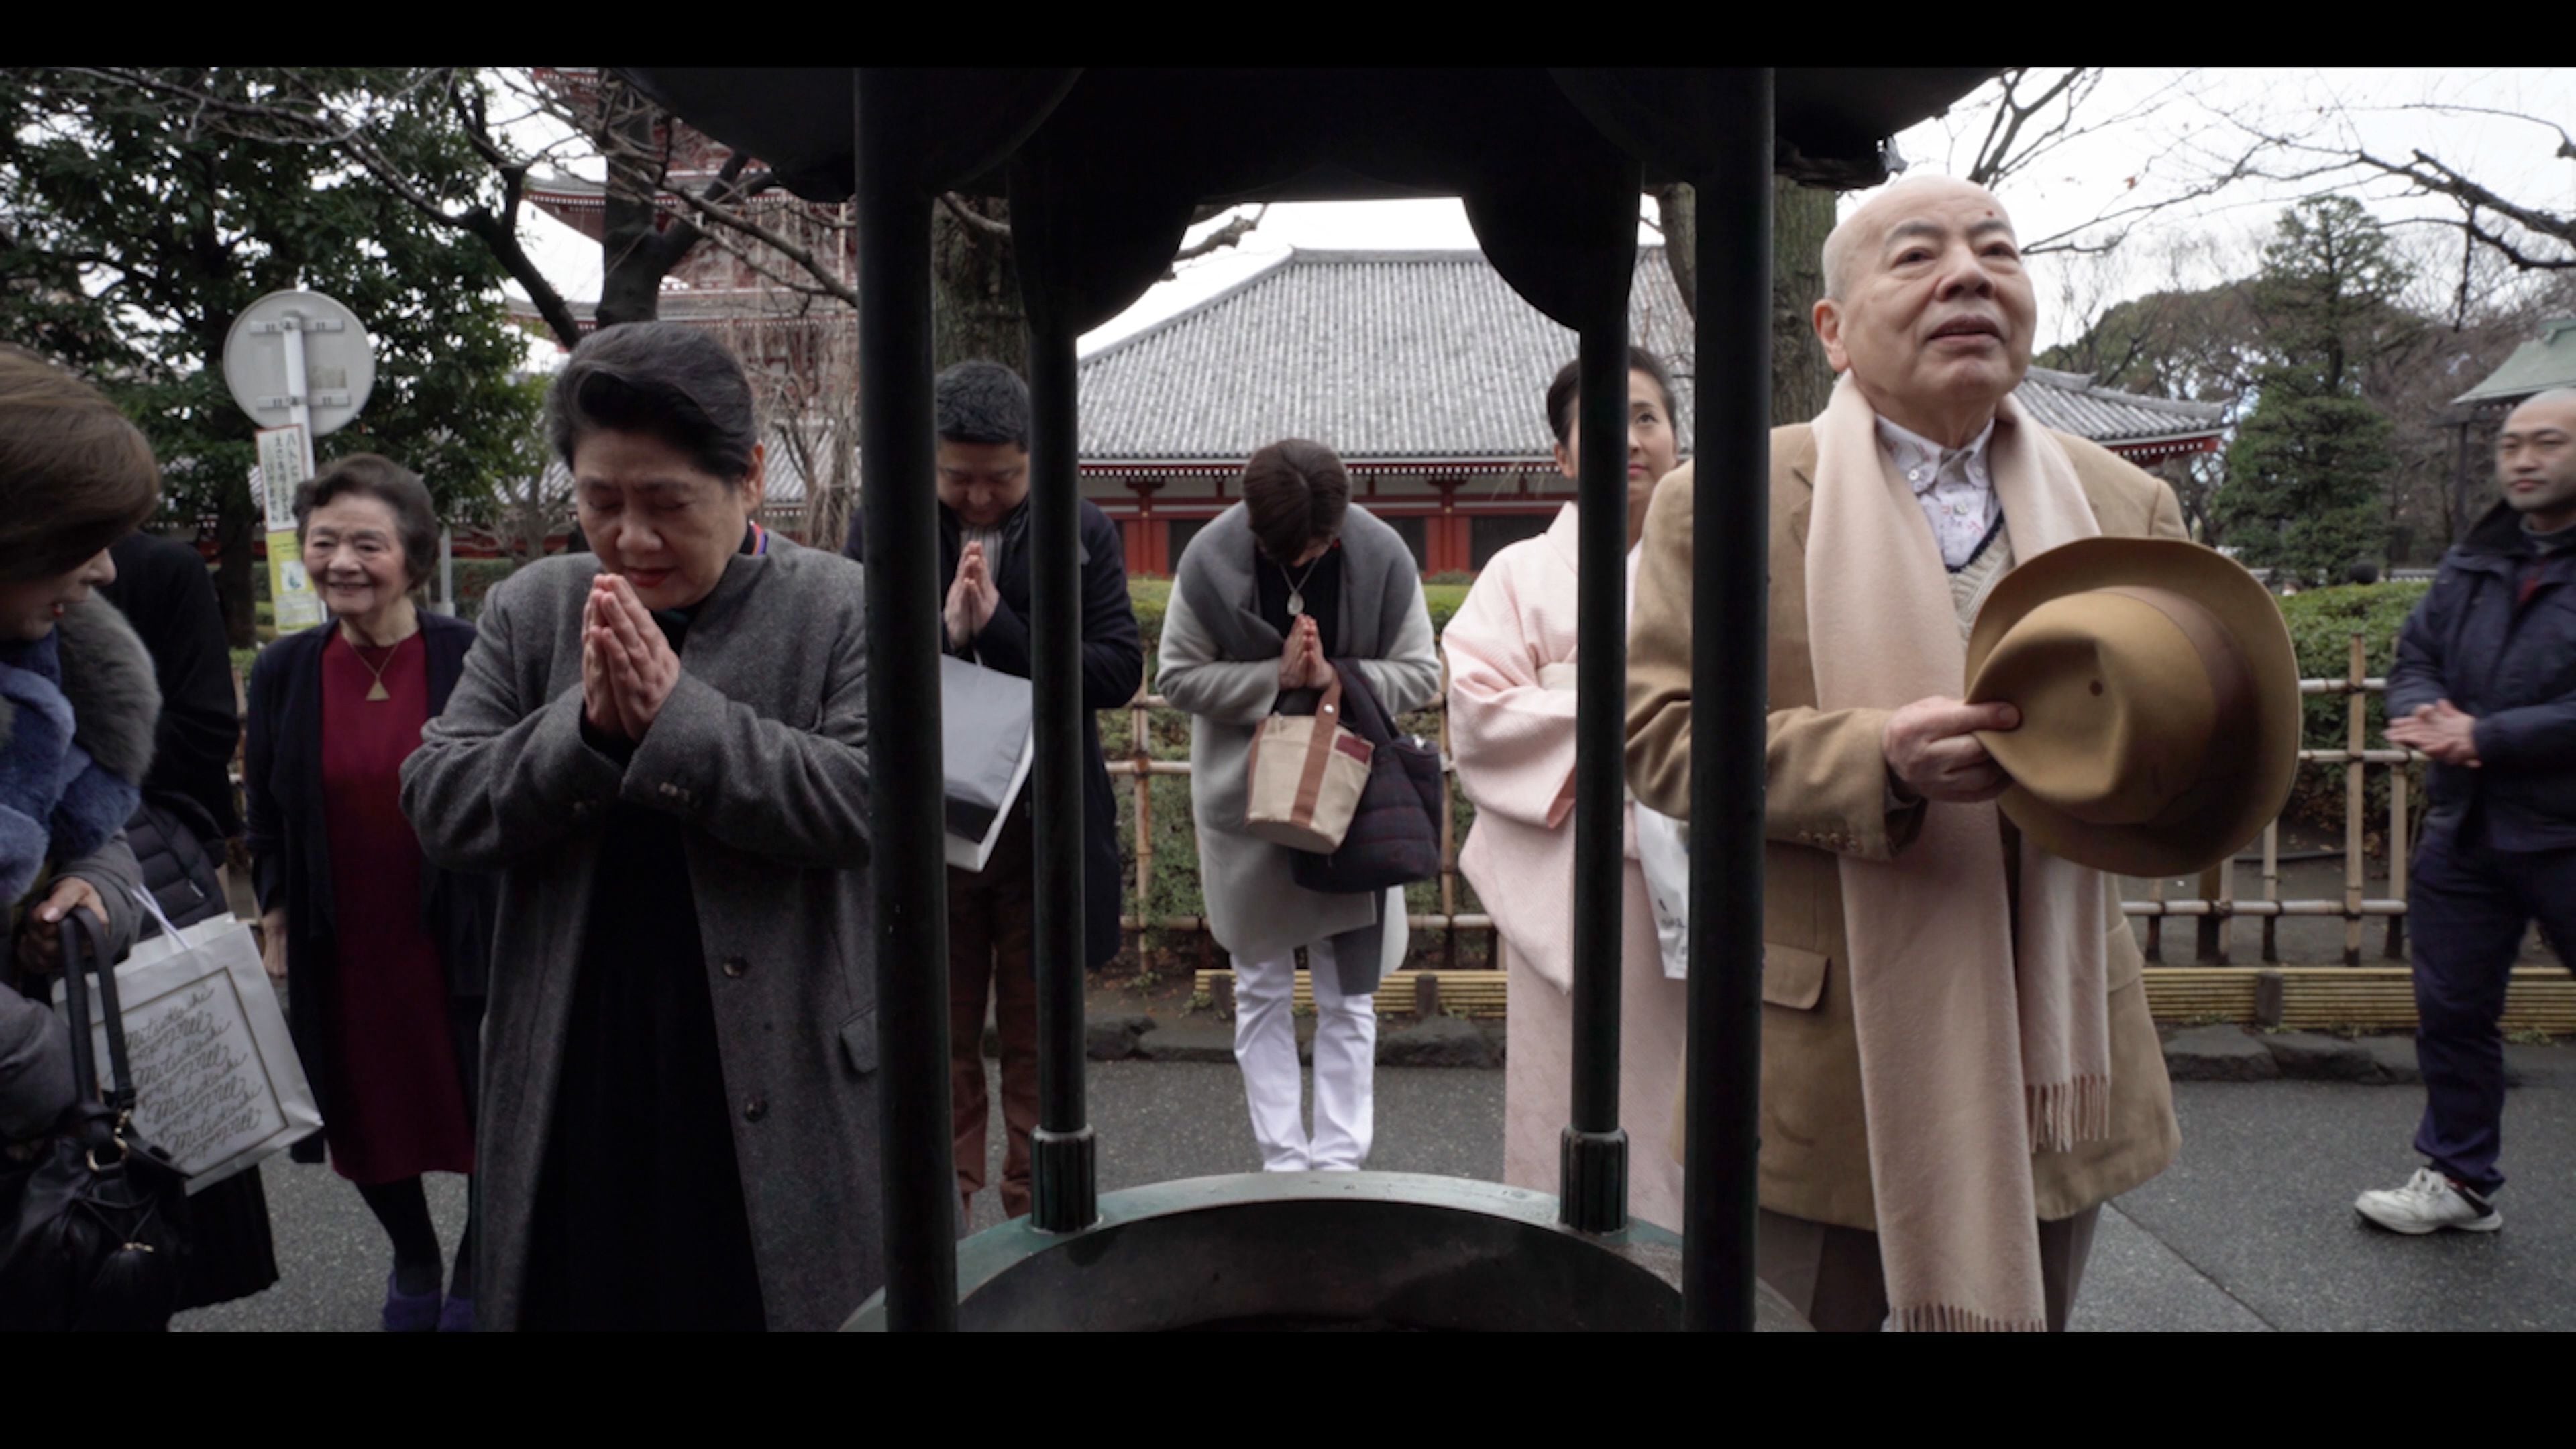 El matrimonio Ishida, Hiroyoshi y su esposa Tomiko, en un templo rezando tras su jornada laboral.